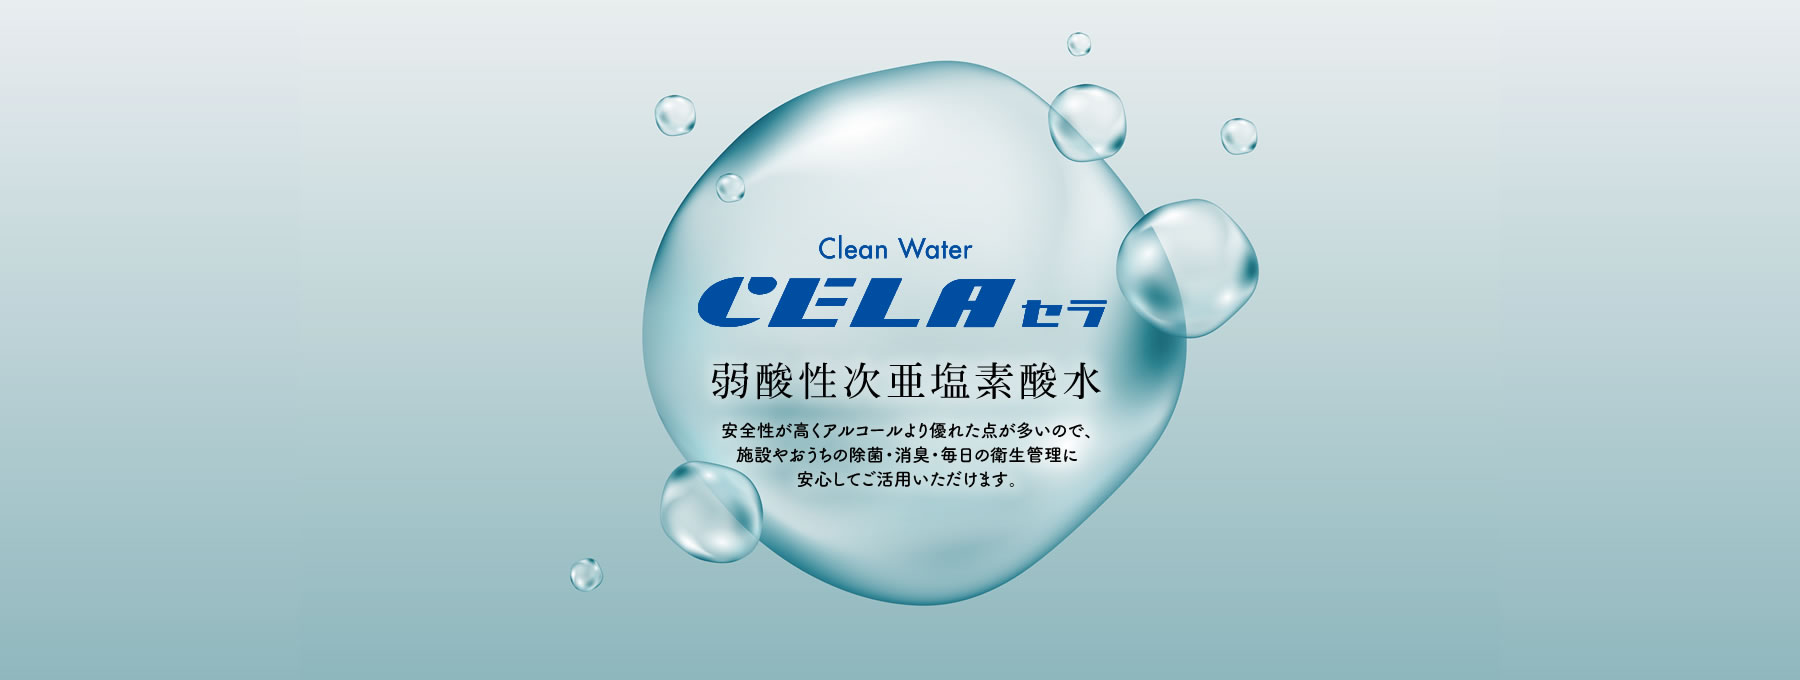 Clean Water CELA セラ 弱酸性次亜塩素酸水 安全性が高くアルコールより優れた点が多いので、施設やおうちの除菌・消臭・毎日の衛生管理に安心してご活用いただけます。